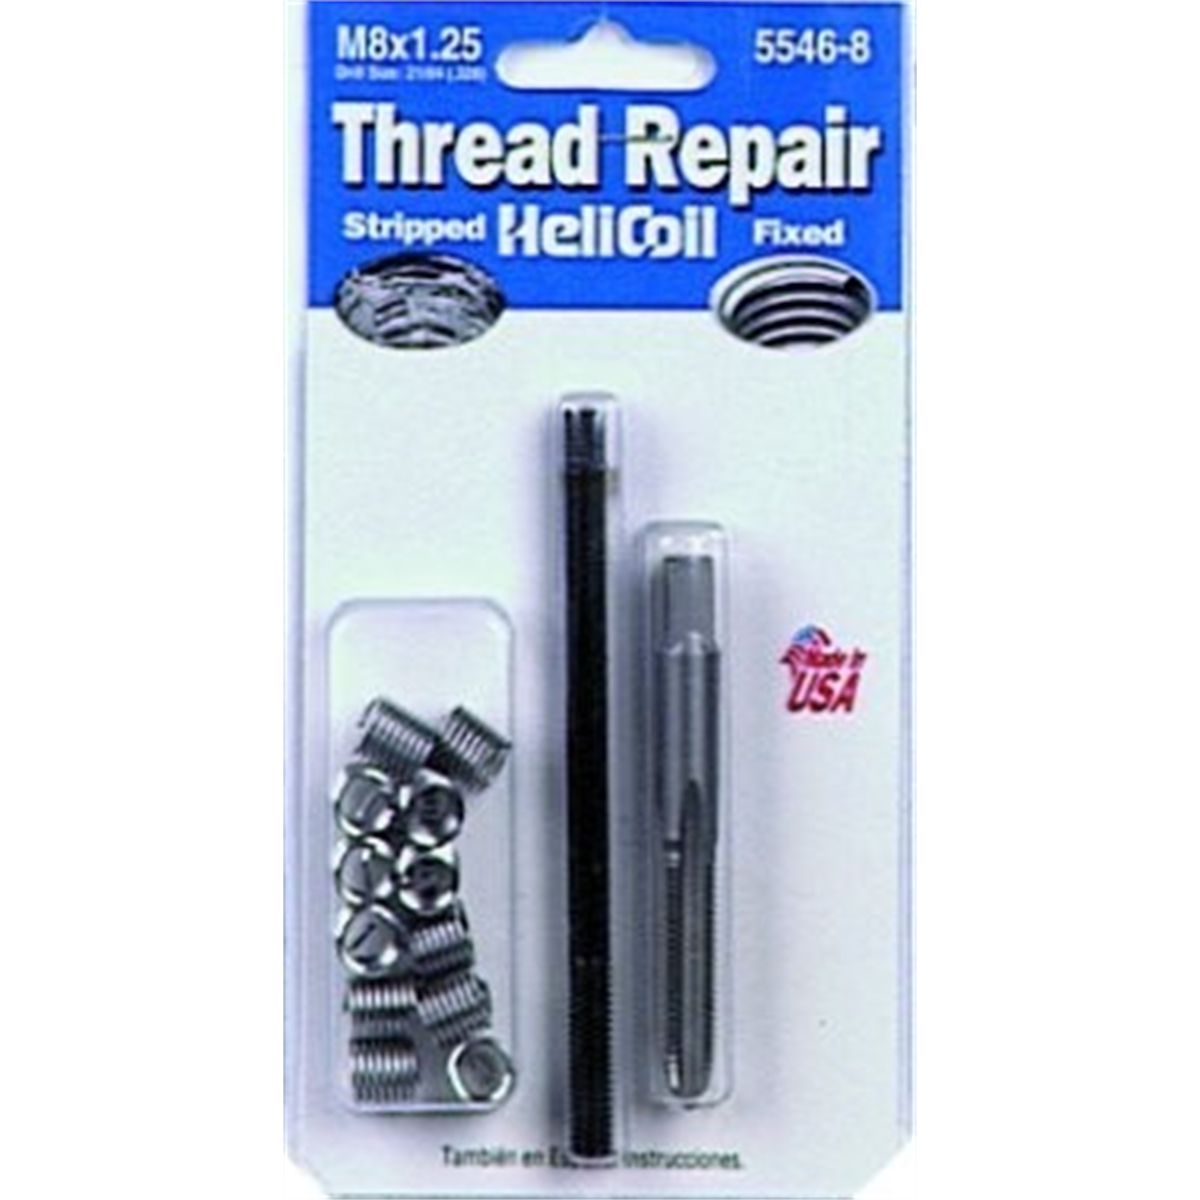 Metric Coarse Thread Repair Kit - M8x1.25 x 12.0mm...